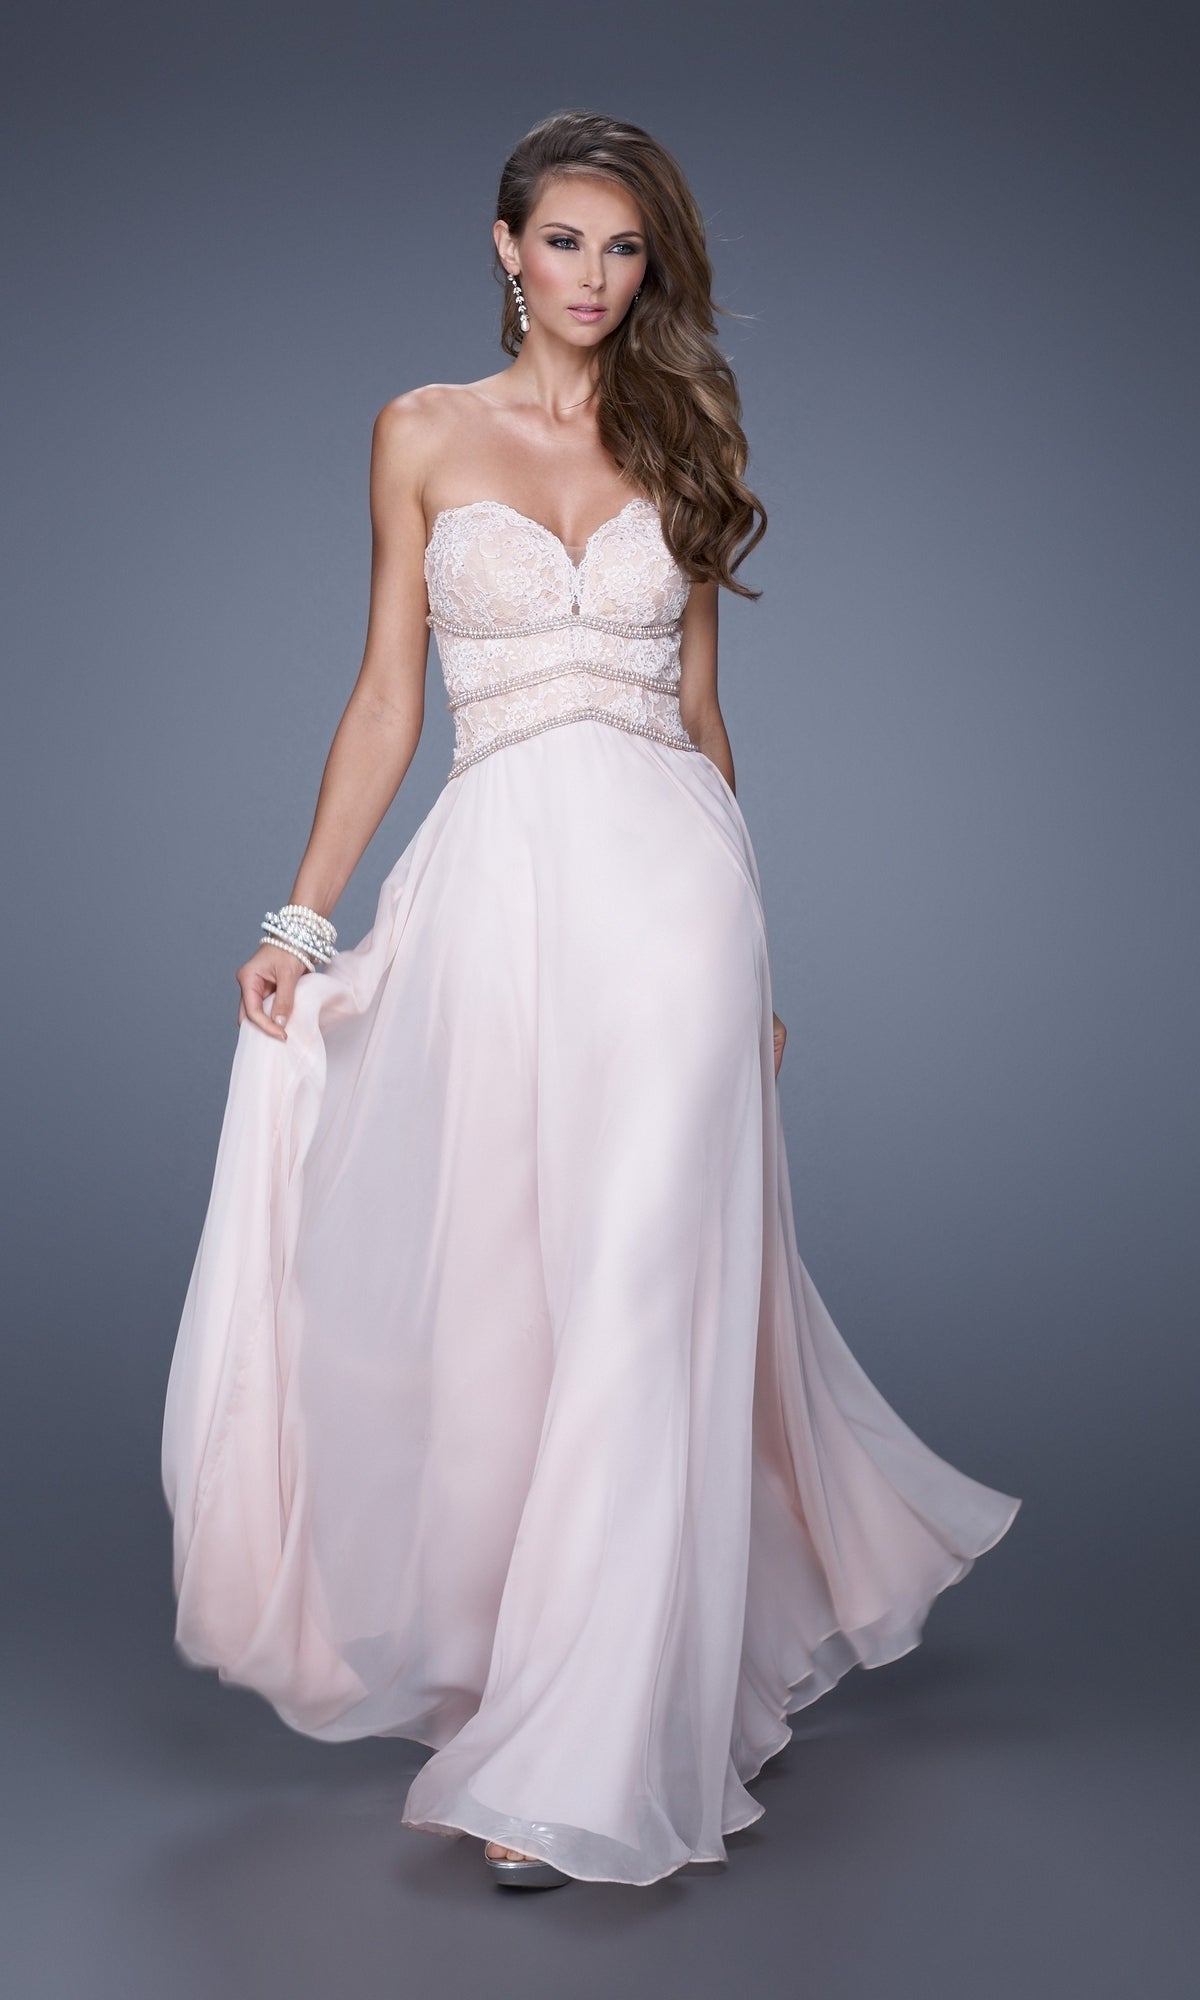 Lace-Bodice La Femme Chiffon Prom Dress 20743